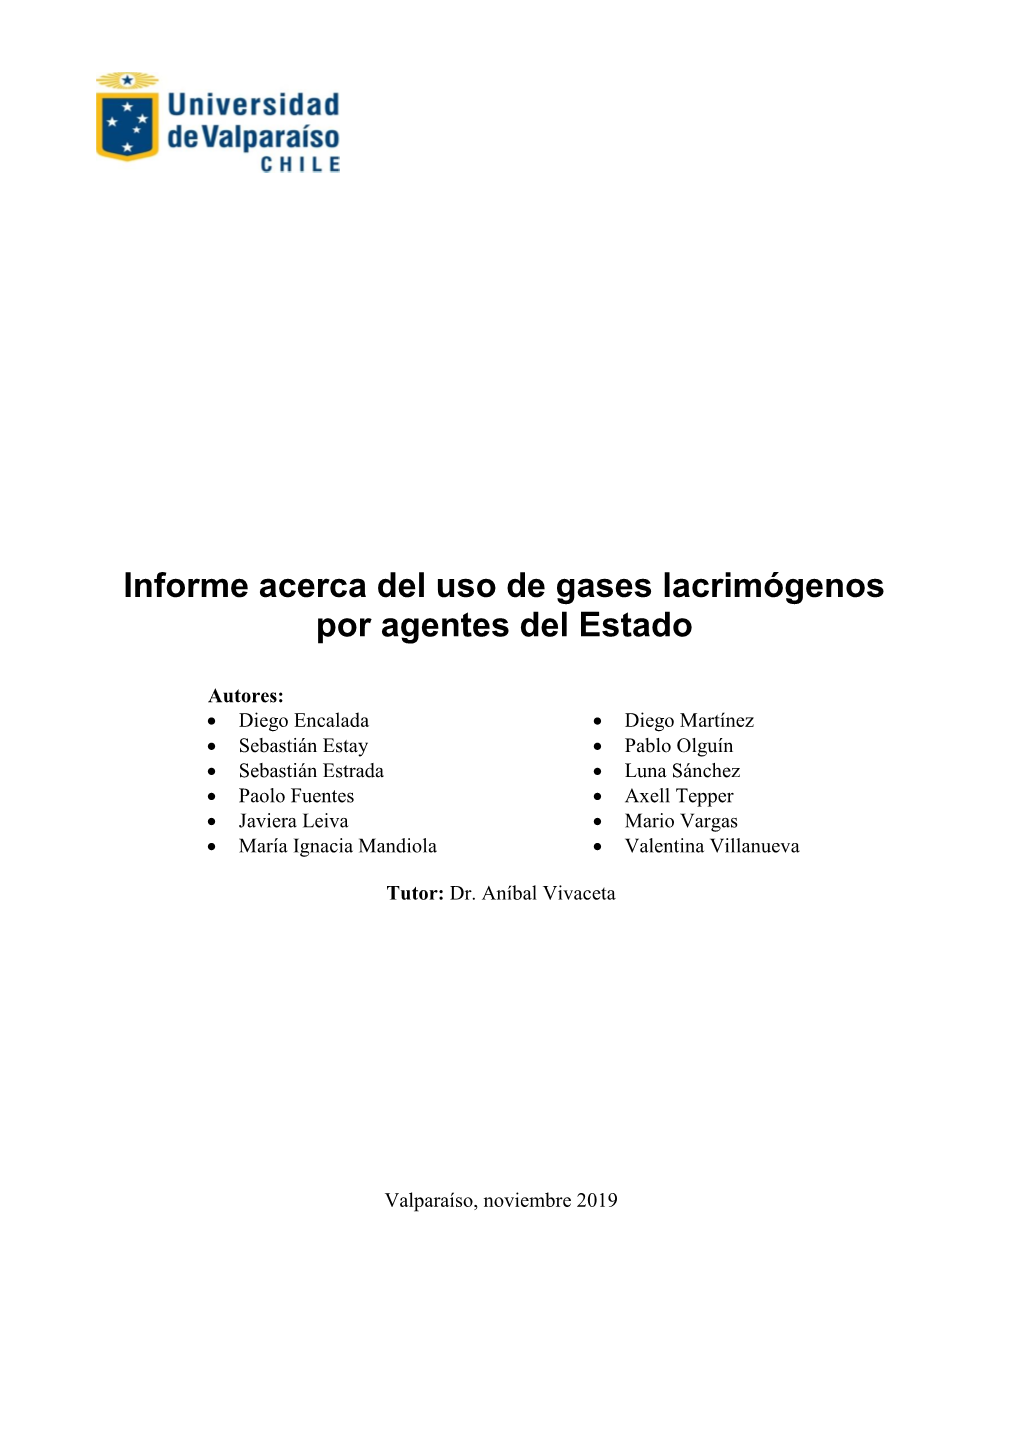 Informe Acerca Del Uso De Gases Lacrimógenos Por Agentes Del Estado